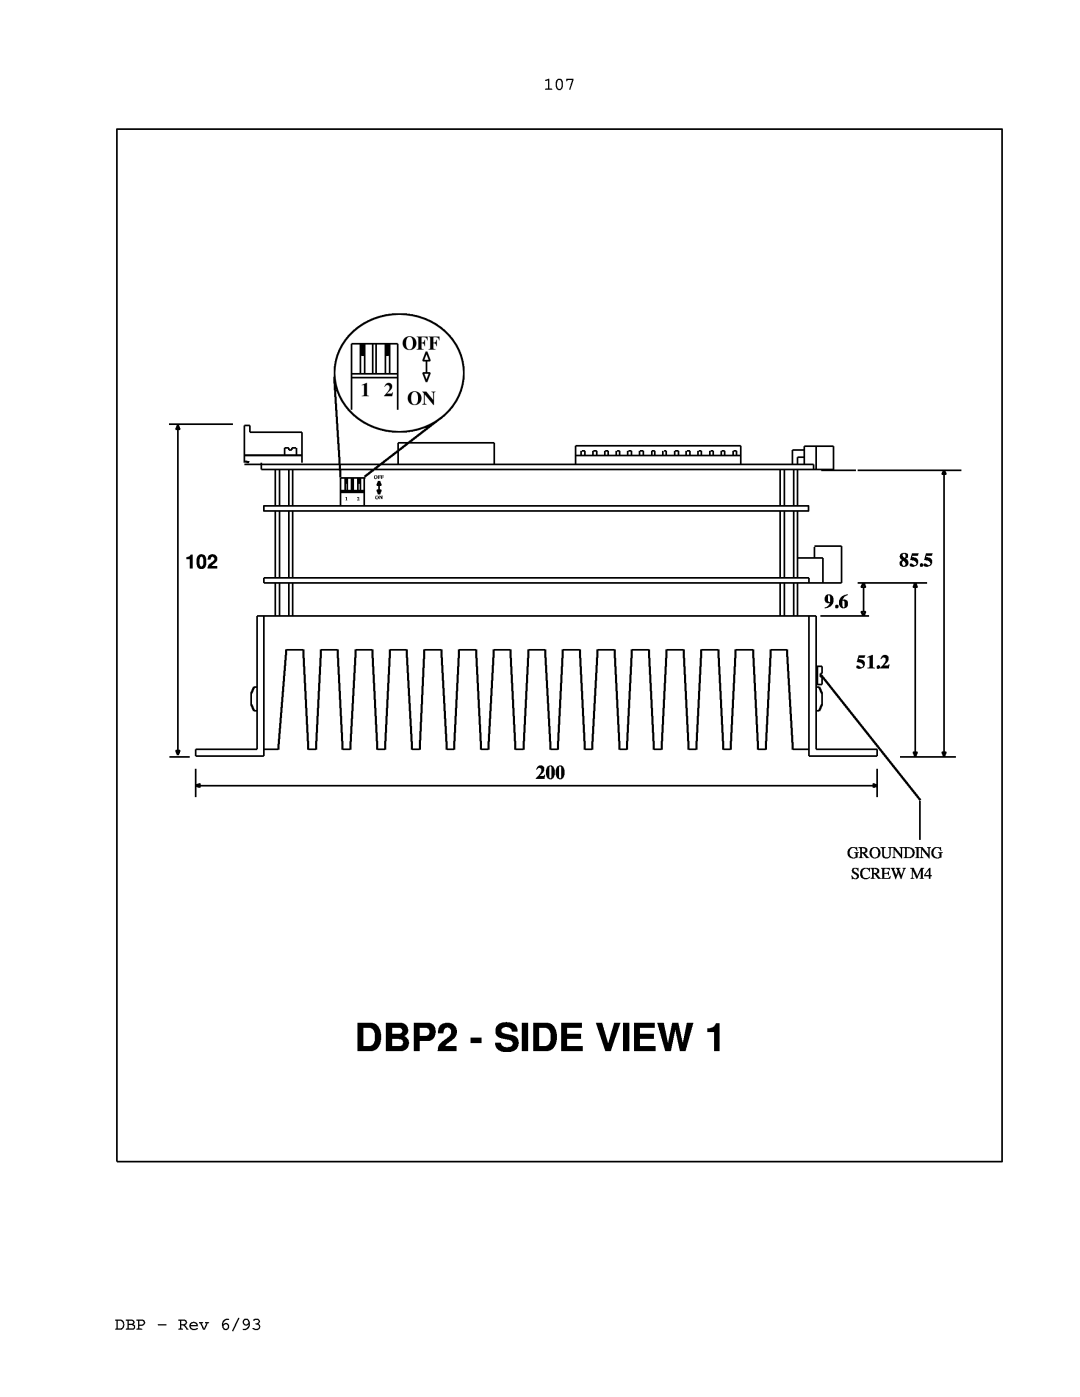 Elmo DBP SERIES manual DBP2 - SIDE VIEW, 1 2 ON, 85.5, 51.2, SCREW M4 